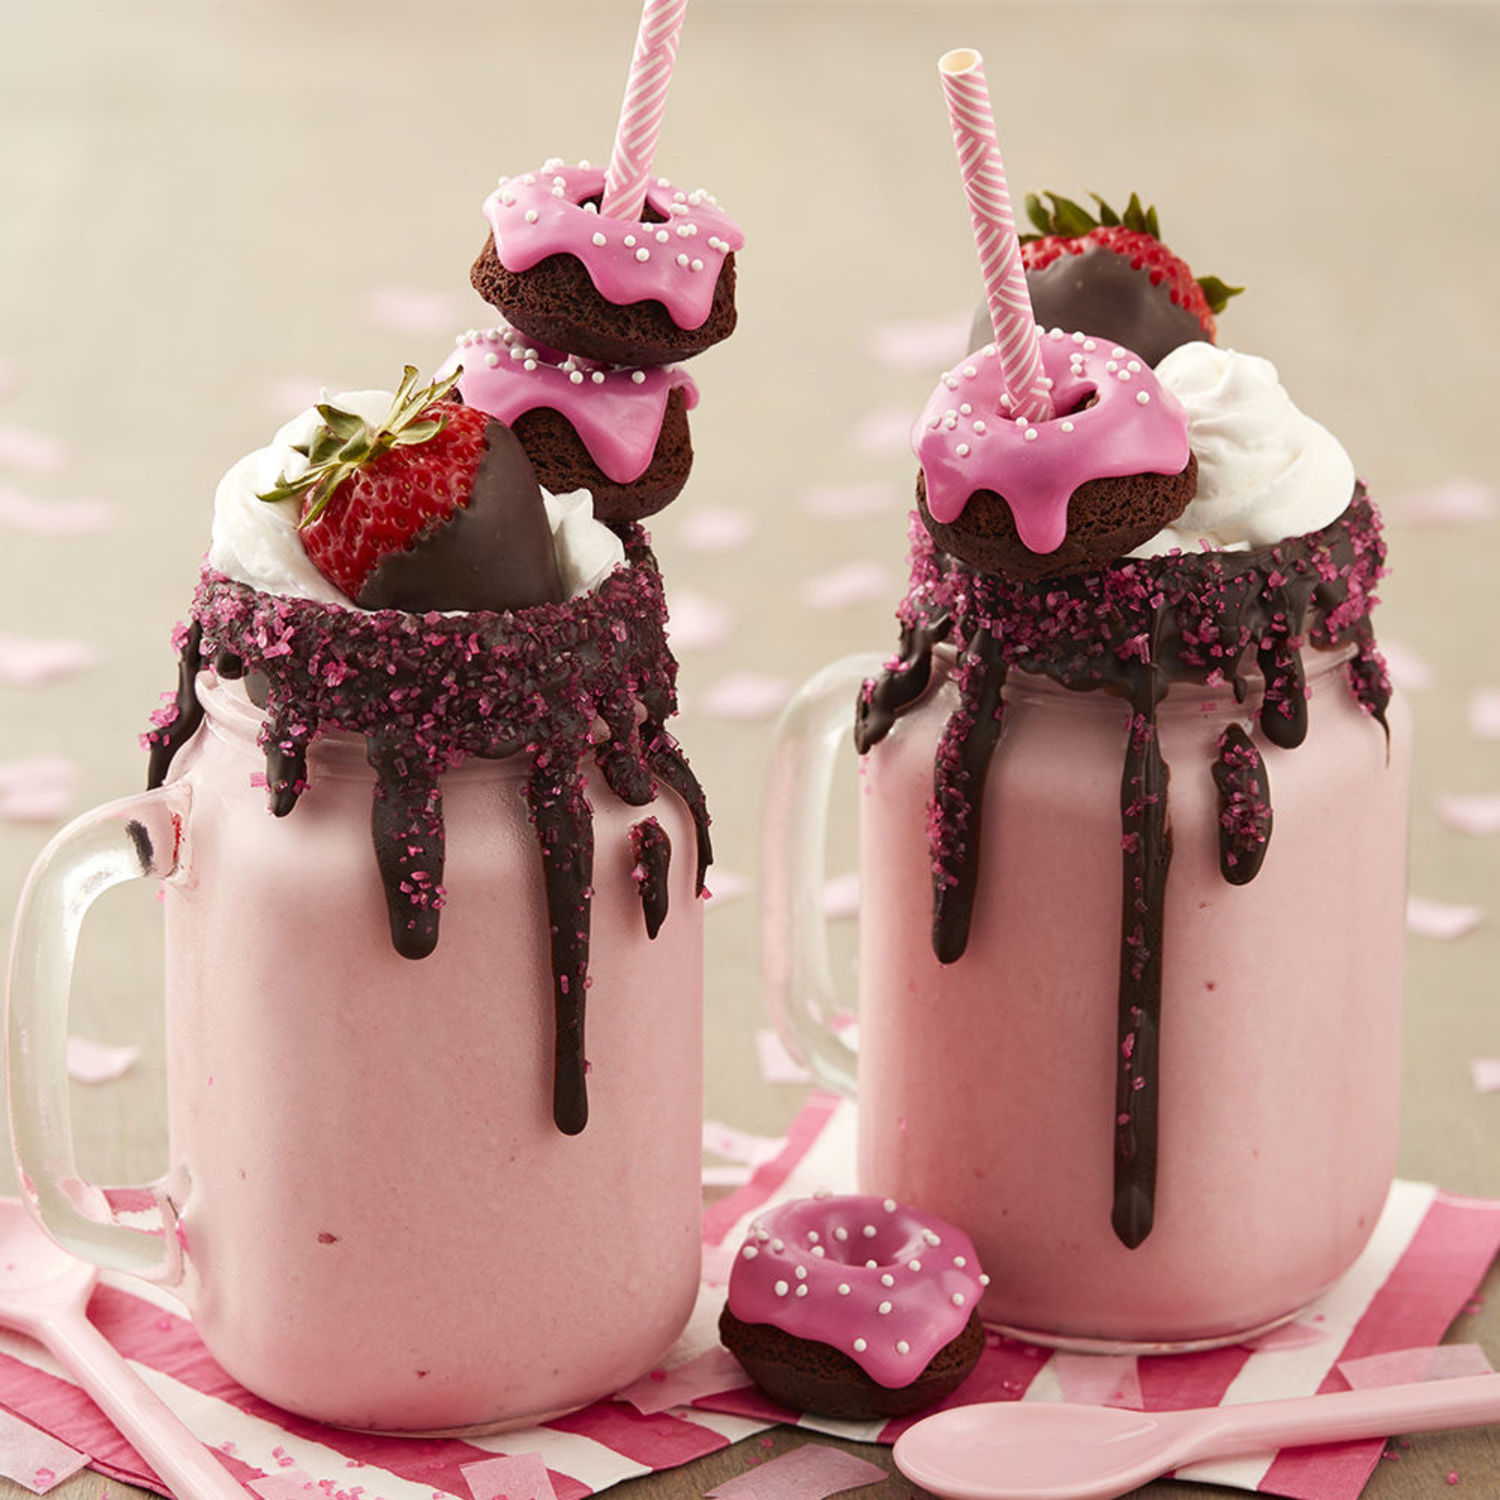 Chocolate Covered Strawberry Milkshakes